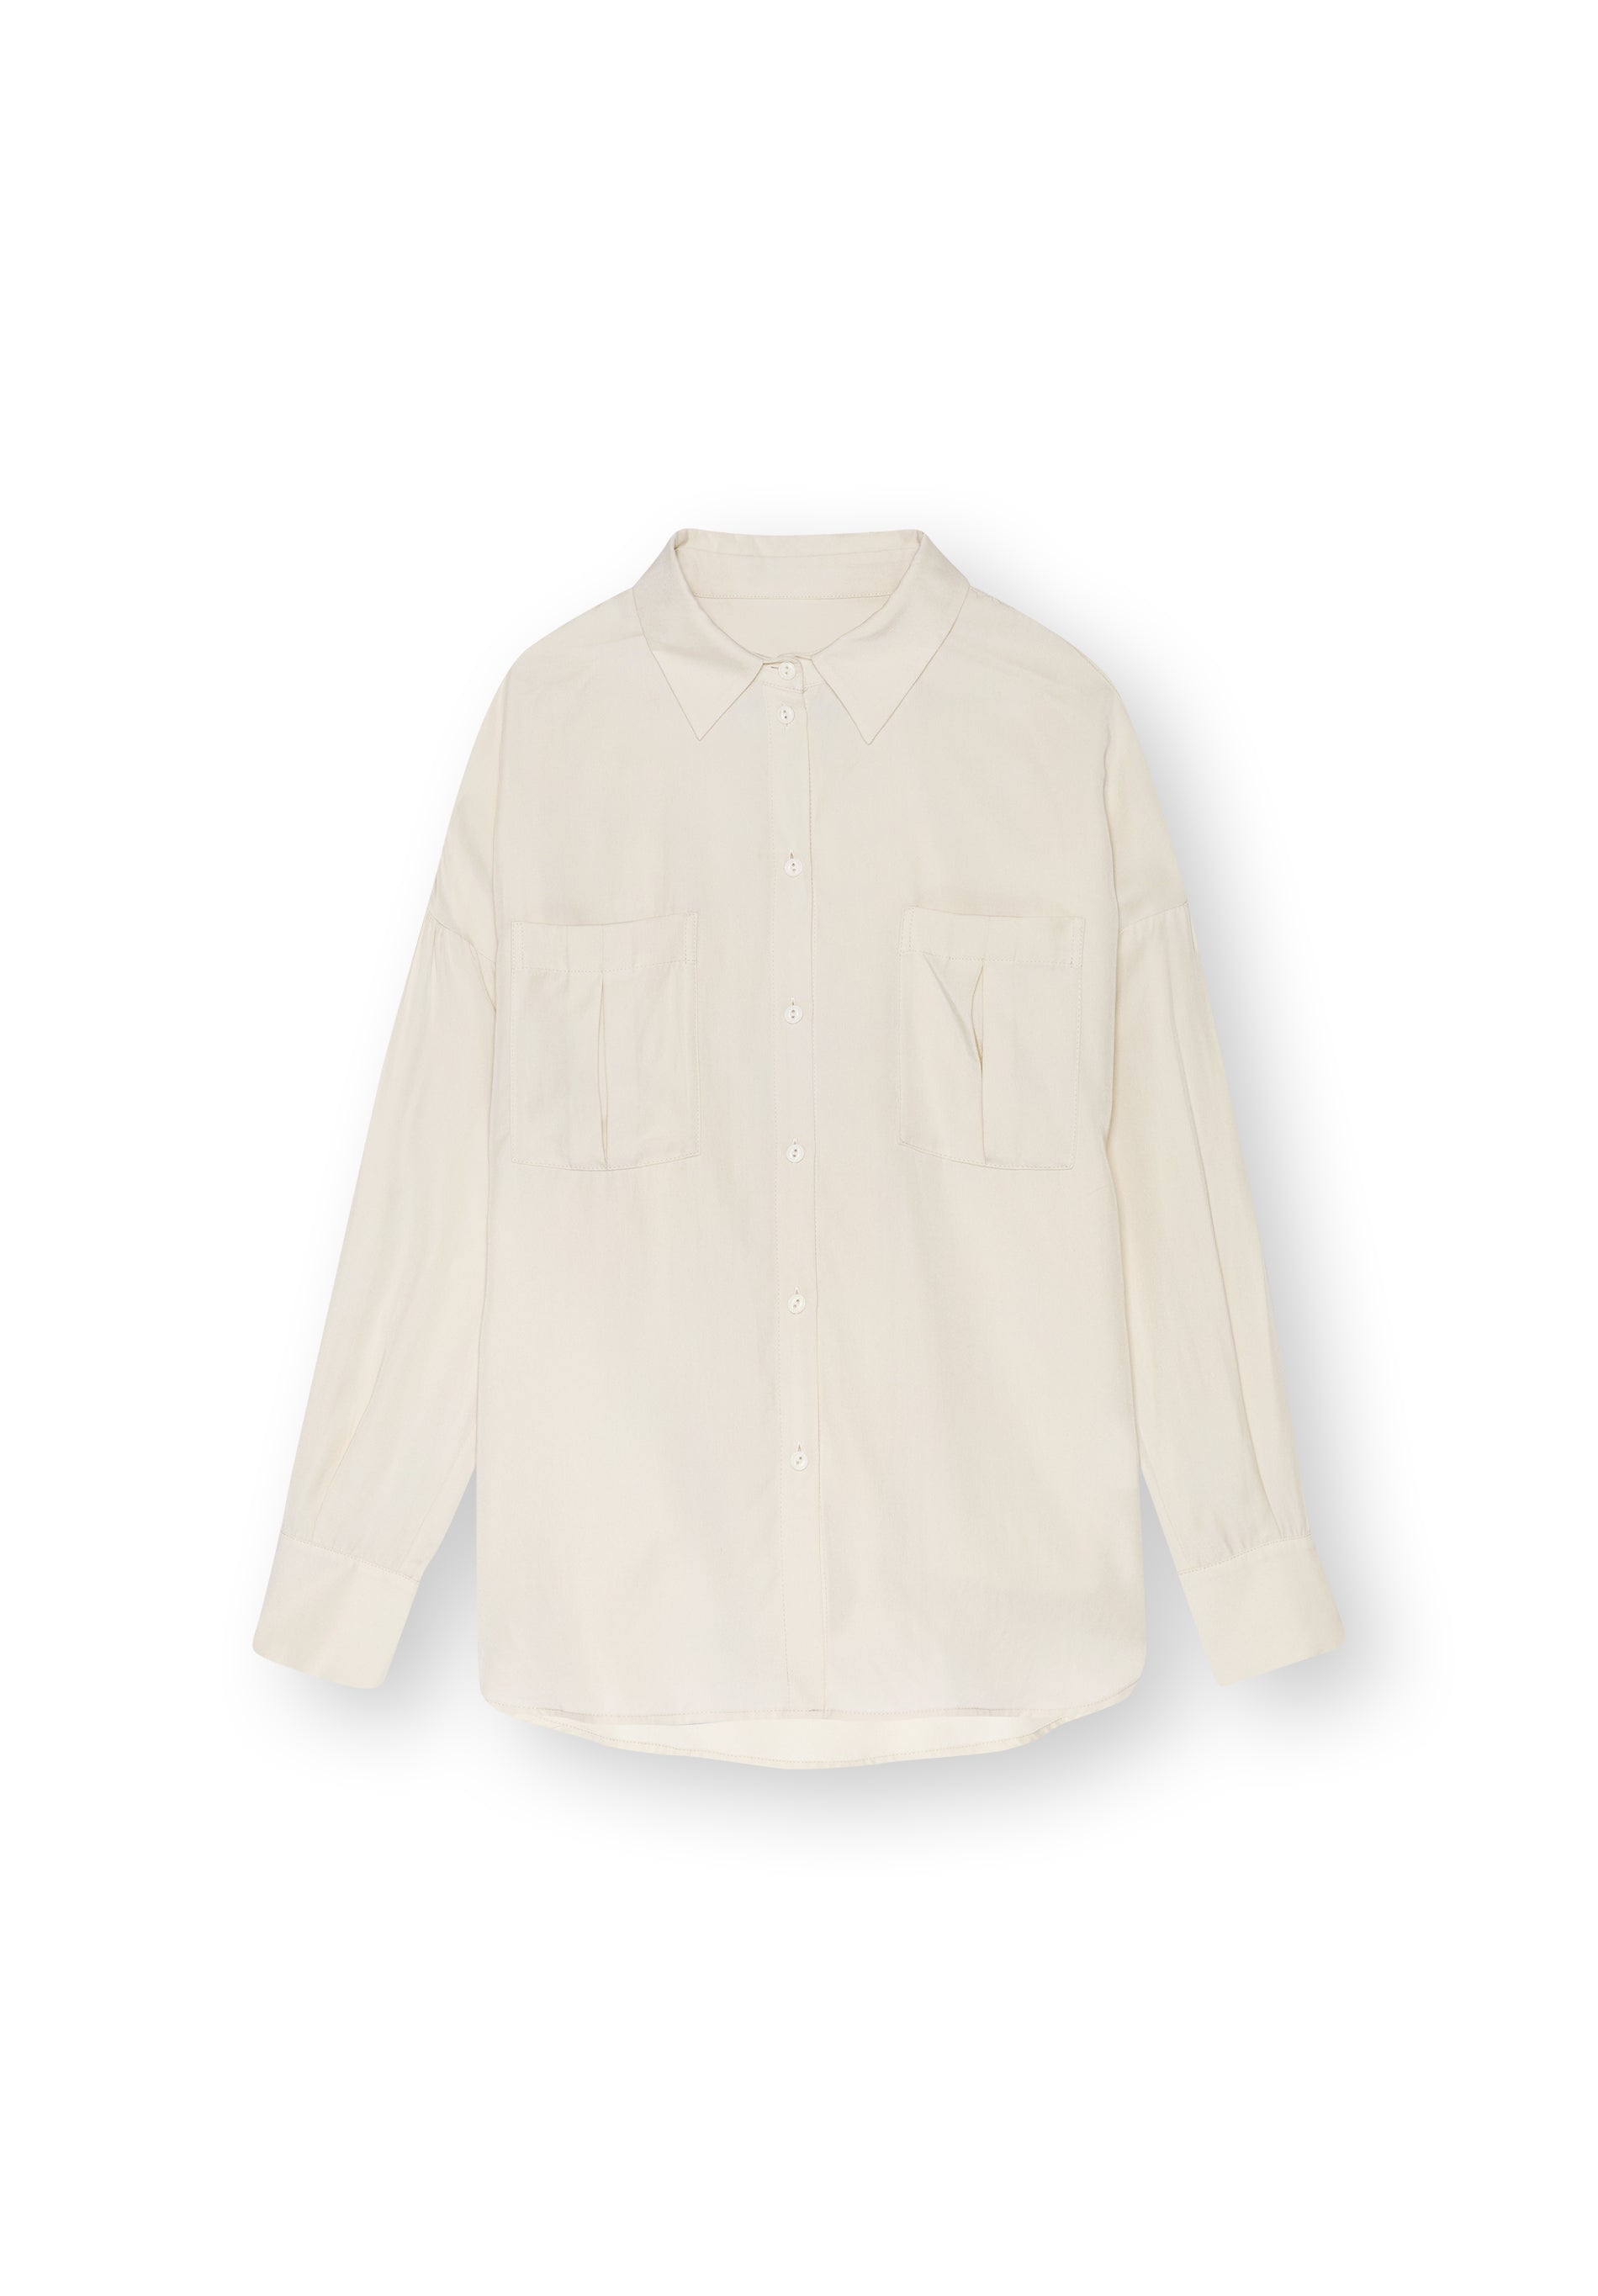 Bluse MANTARI in off white von LOVJOI aus TENCEL™